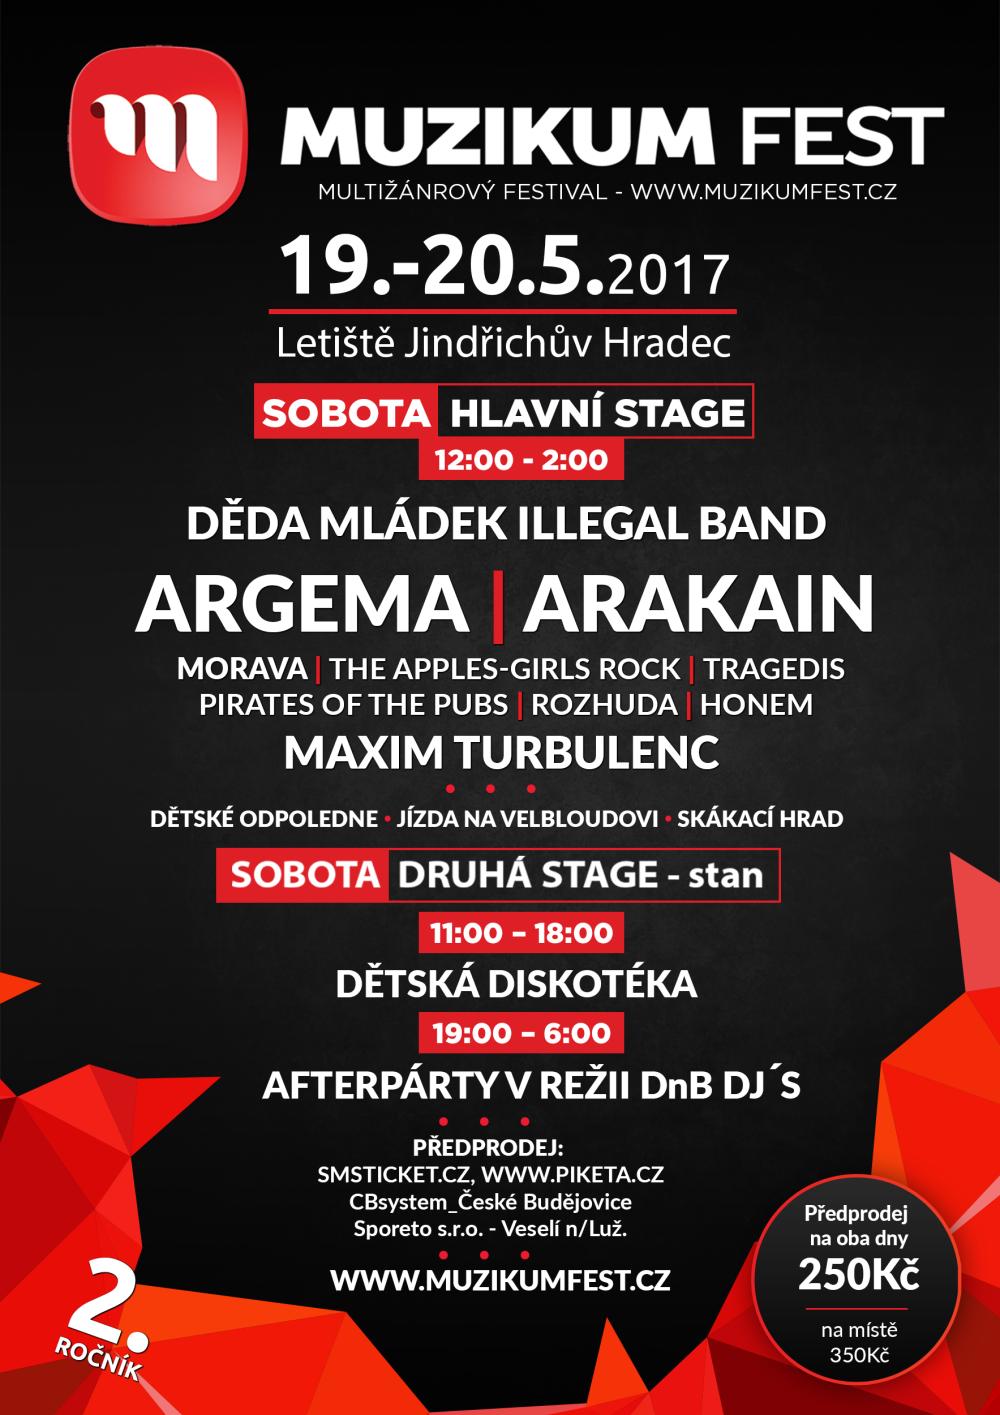 Fotografie 1 k novince Muzikum fest Jindřichův Hradec 20. 5. 2017